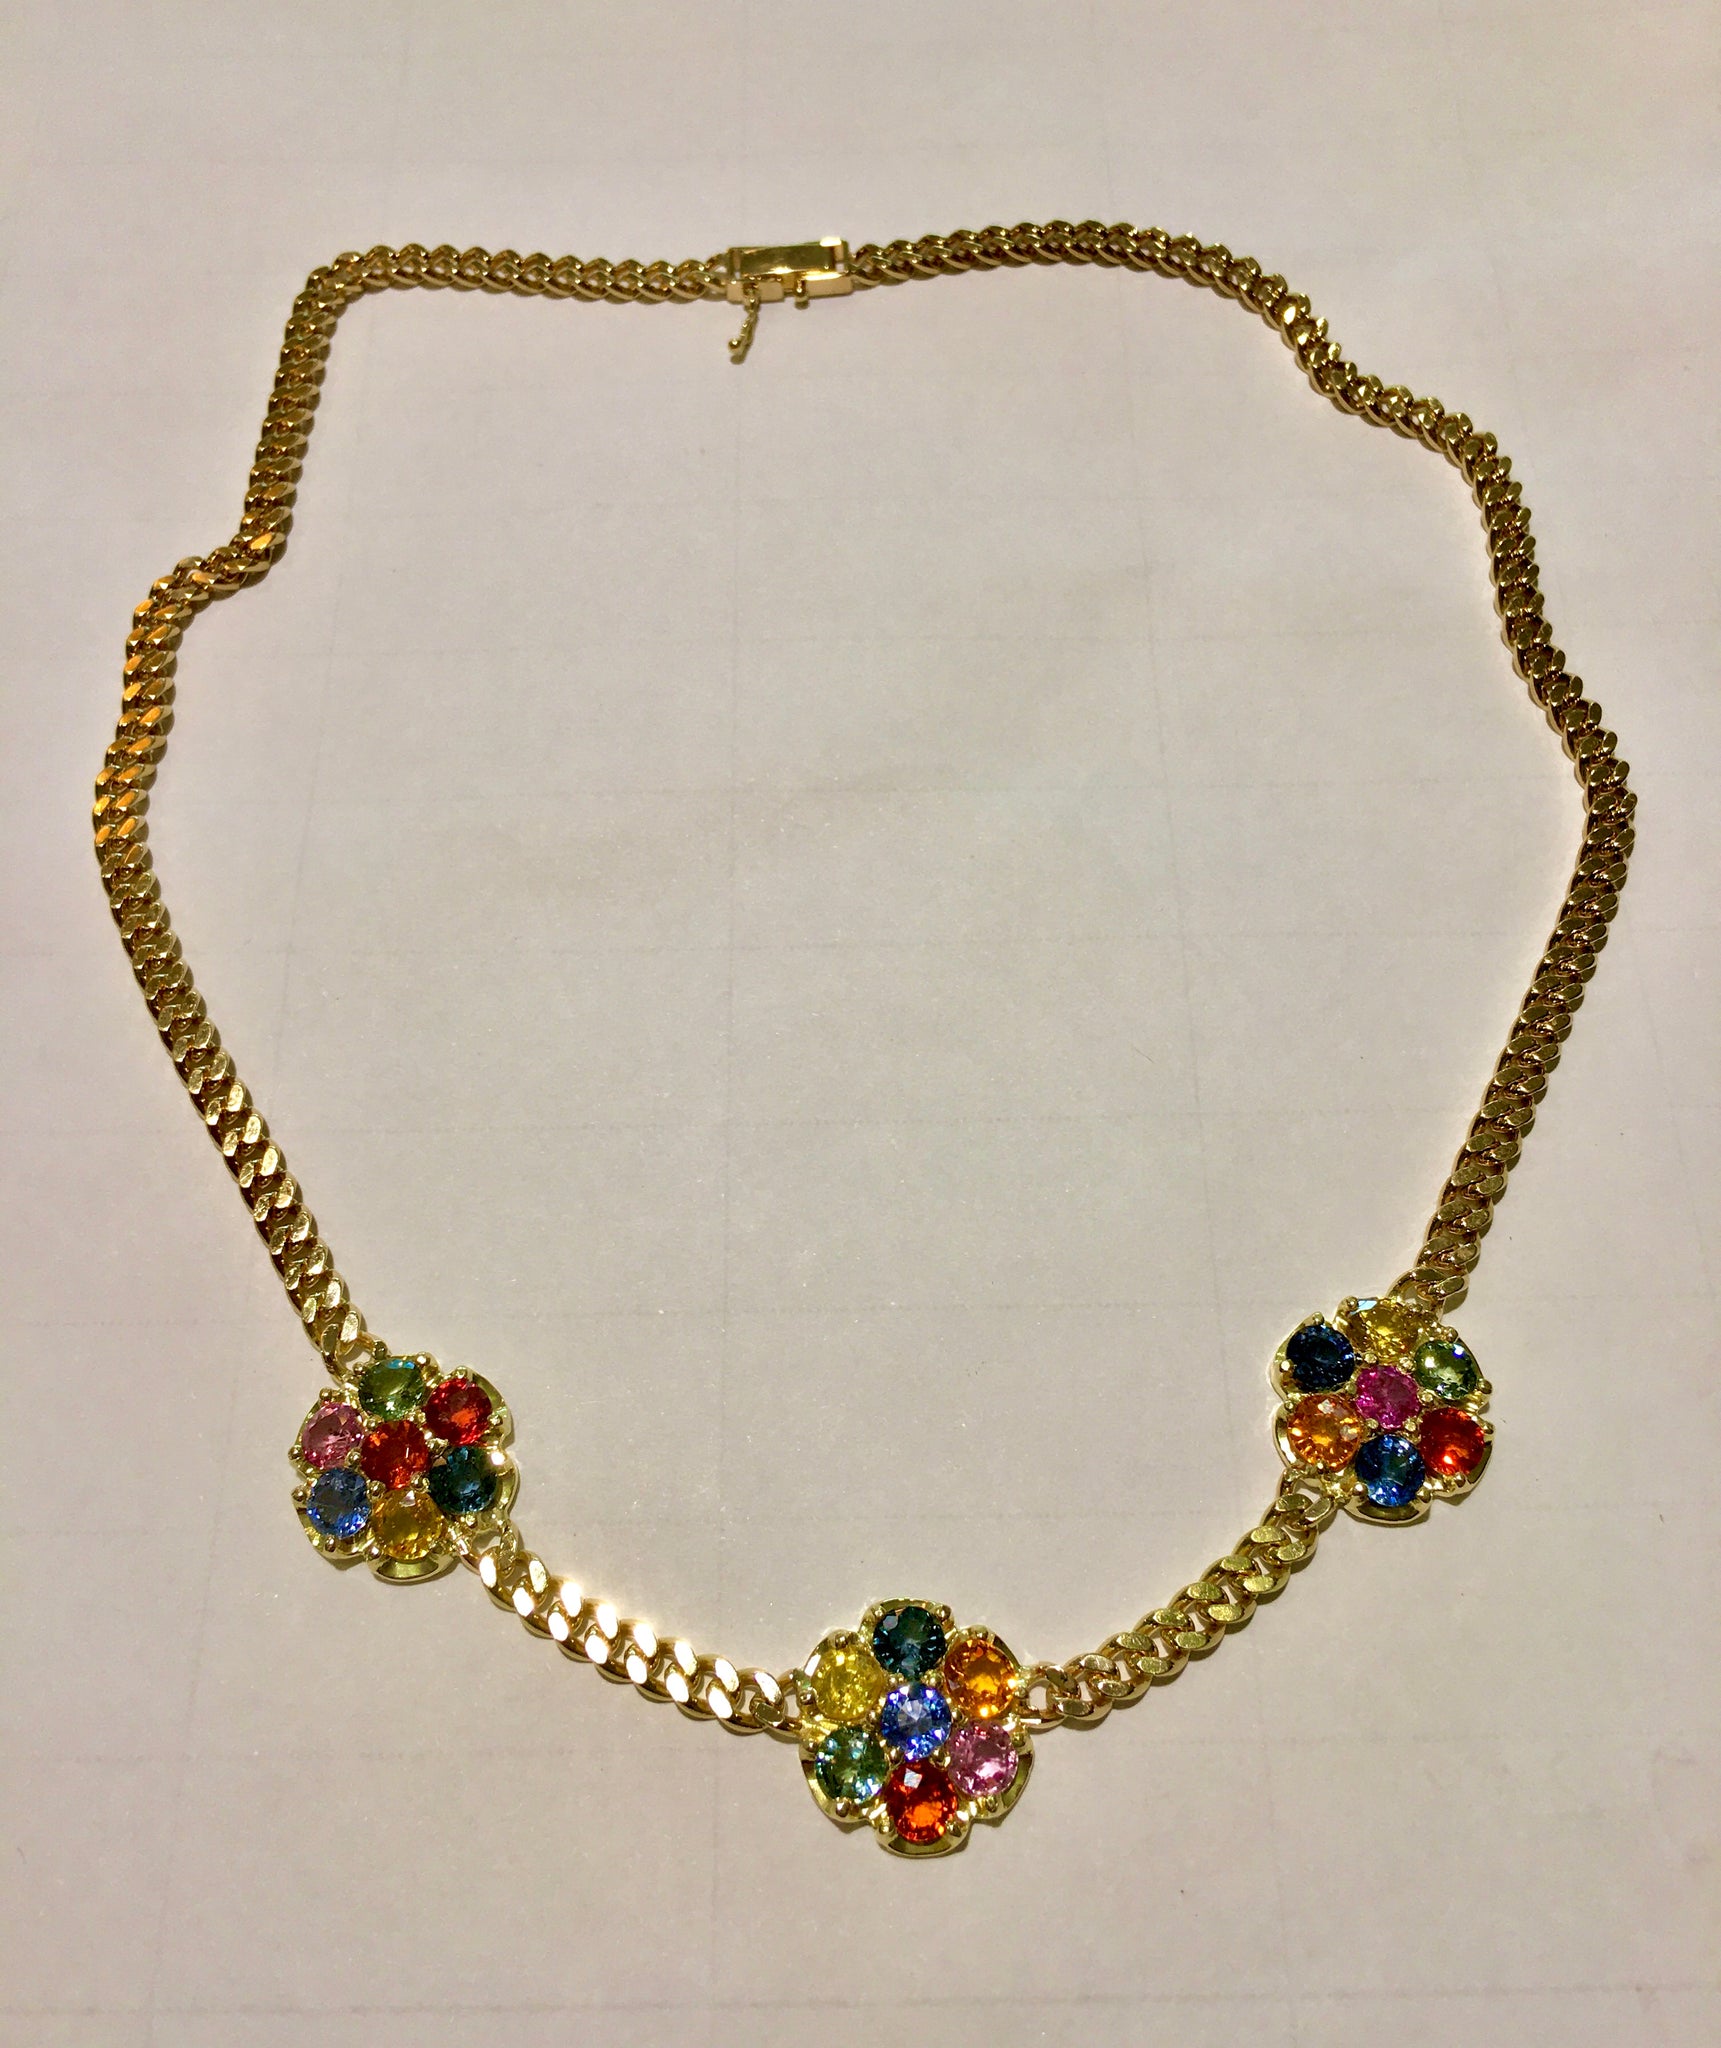 13.50 Carat Multi-Color Sapphire Flower Chain Link Necklace 18K